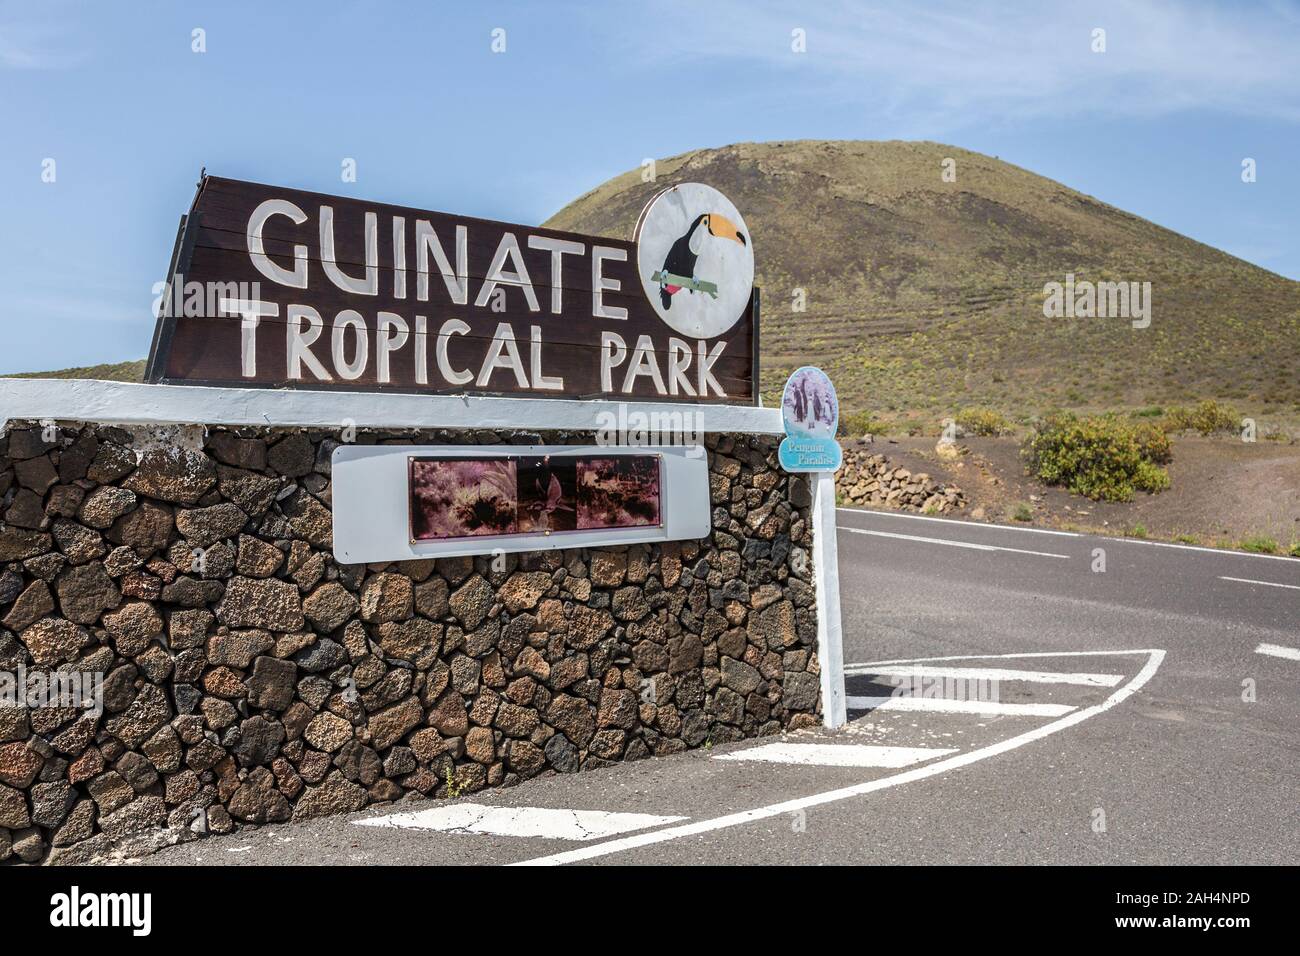 Segno per Guinate Tropical Park, Lanzarote, Isole Canarie, Spagna Foto Stock